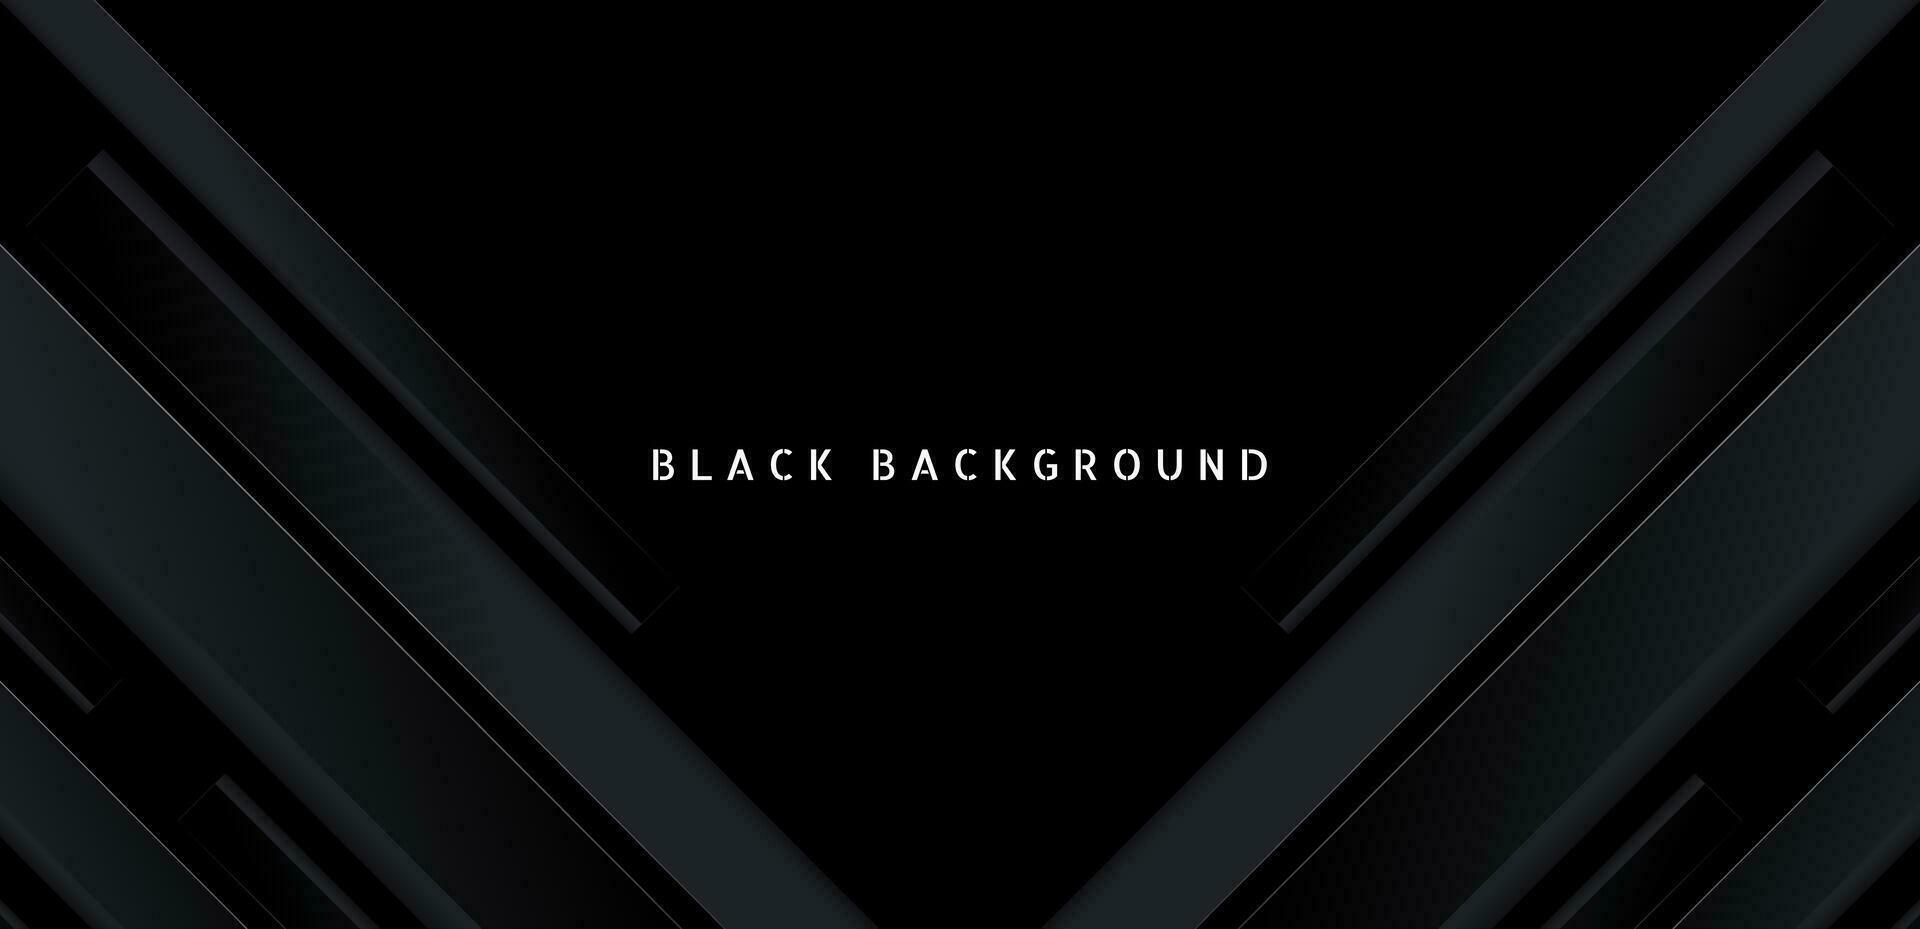 svart premie abstrakt bakgrund med mörk geometrisk former. mycket lämplig för affisch, baner, omslag, annons, tapet och trogen design begrepp vektor